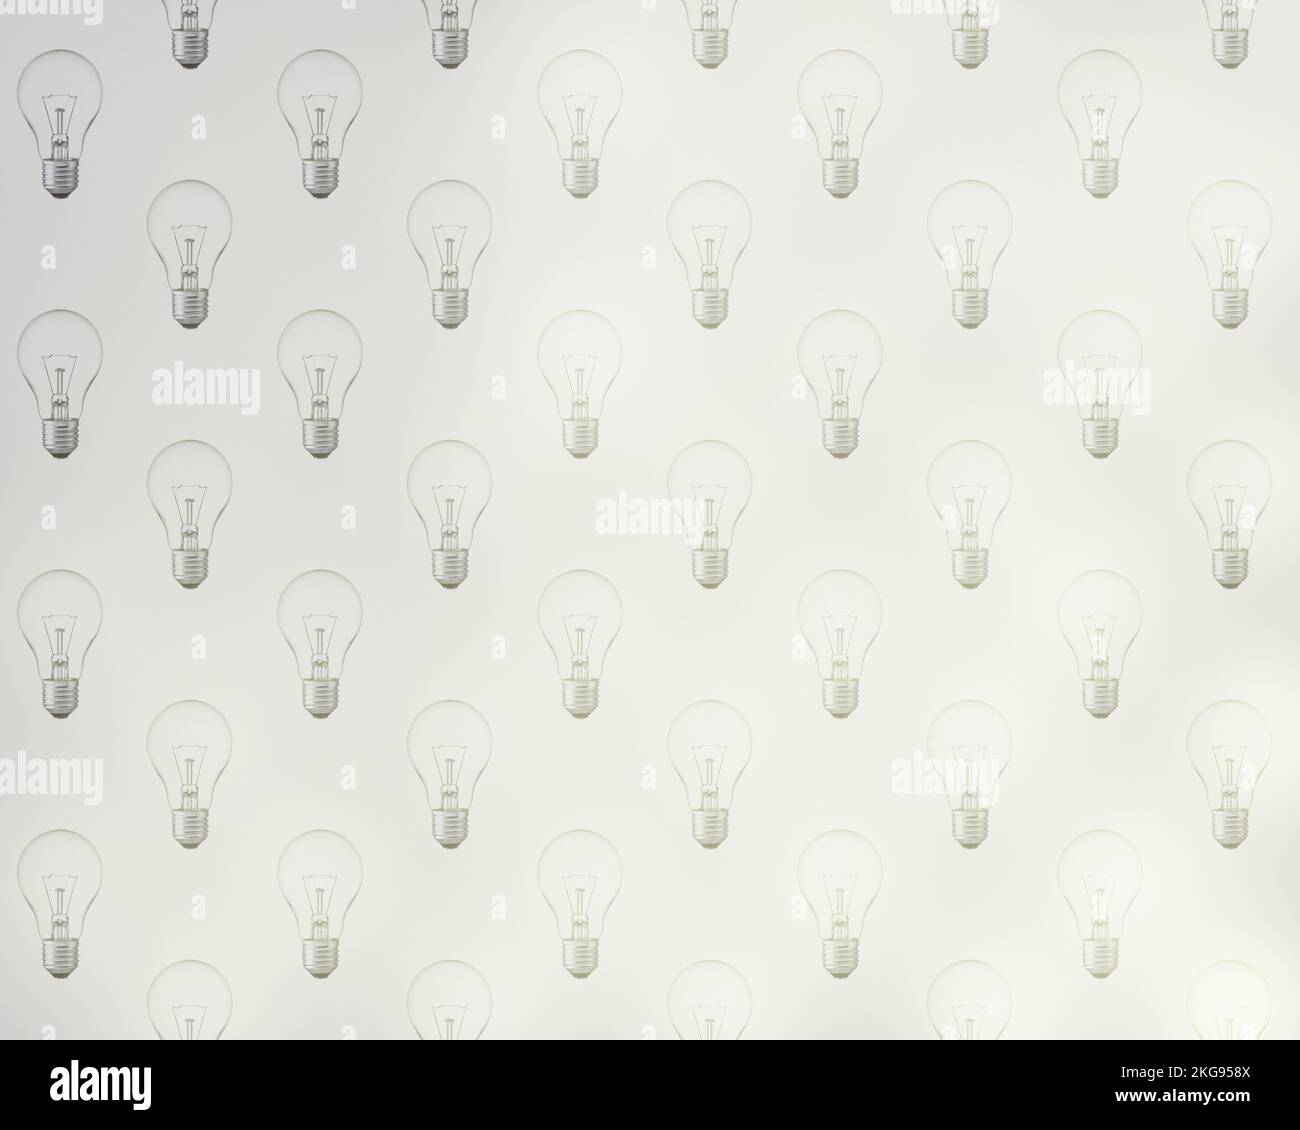 Motif de nombreuses ampoules, d'abord éteintes, puis progressivement de plus en plus incandescent et lumineux. Concept d'économie et de gaspillage d'énergie et d'économie d'énergie. Banque D'Images